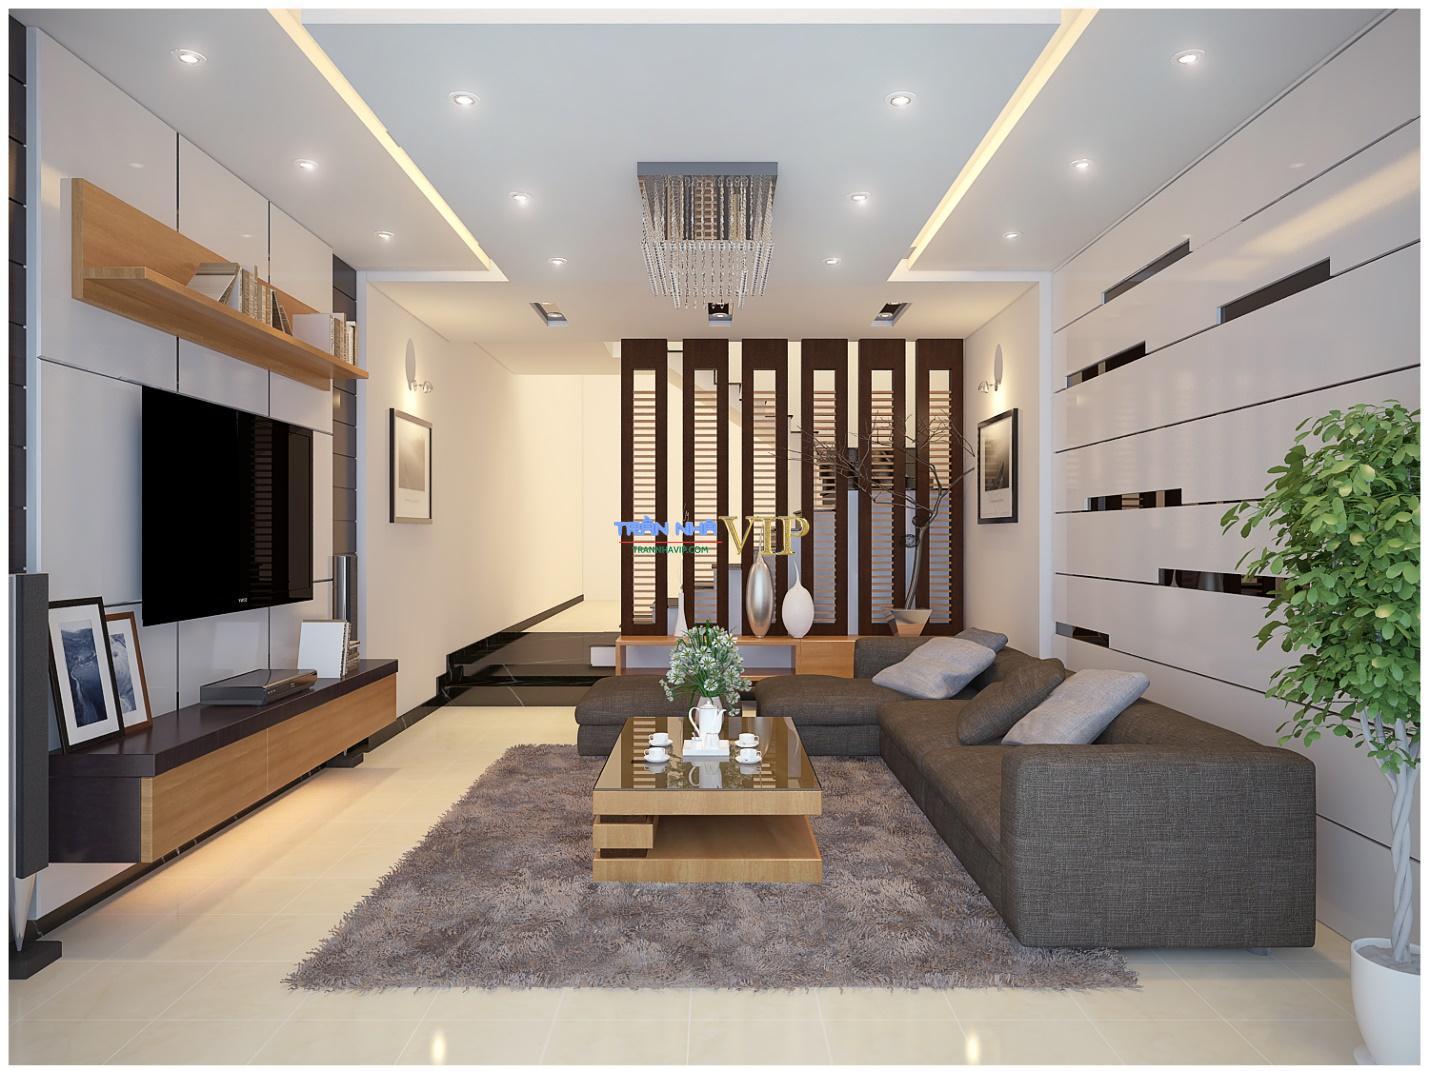 Trần thạch cao phòng khách nhà ống đẹp là lựa chọn tuyệt vời để tăng thêm vẻ đẹp cho không gian sống nhỏ hẹp của bạn. Với những thiết kế đẹp mắt và đặc biệt là sự linh hoạt tối đa trong việc lắp đặt, bạn sẽ chắc chắn có được một không gian sống tối ưu và sinh động.